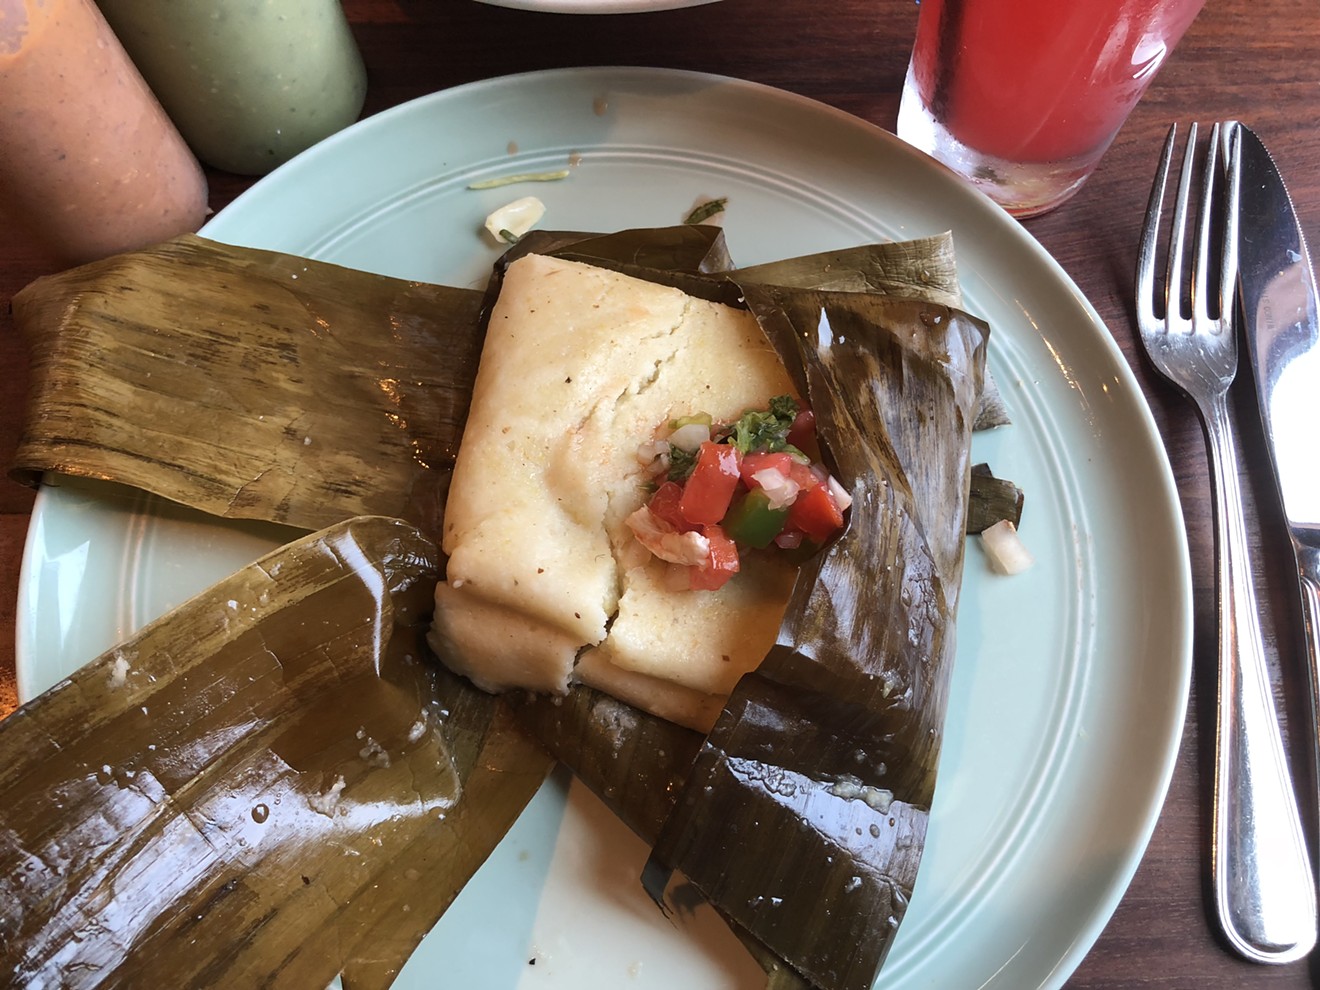 An Oaxacan tamale from the breakfast menu.